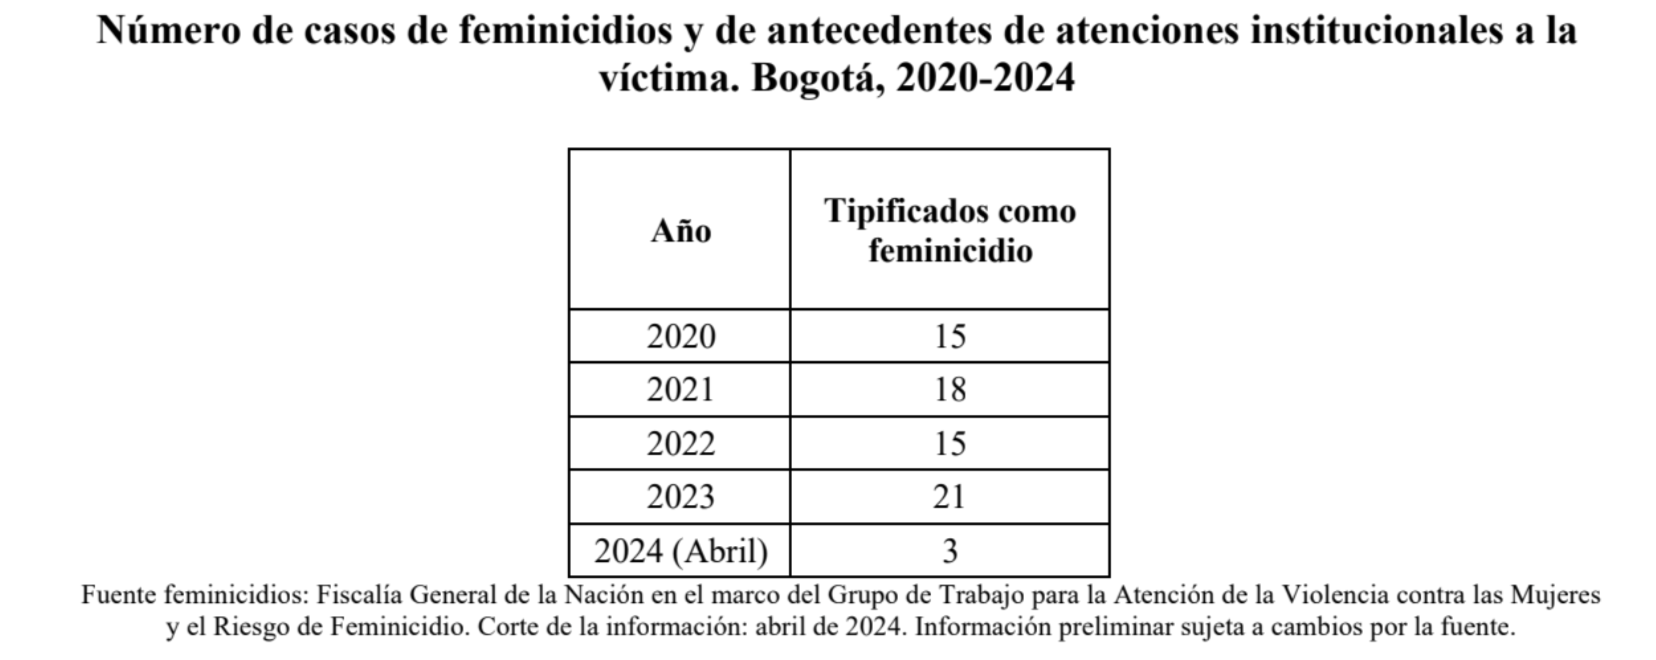 Imagen de una tabla de datos titulada "Número de casos de feminicidios y de antecedentes de atenciones institucionales a la víctima. Bogota 2020-2024"